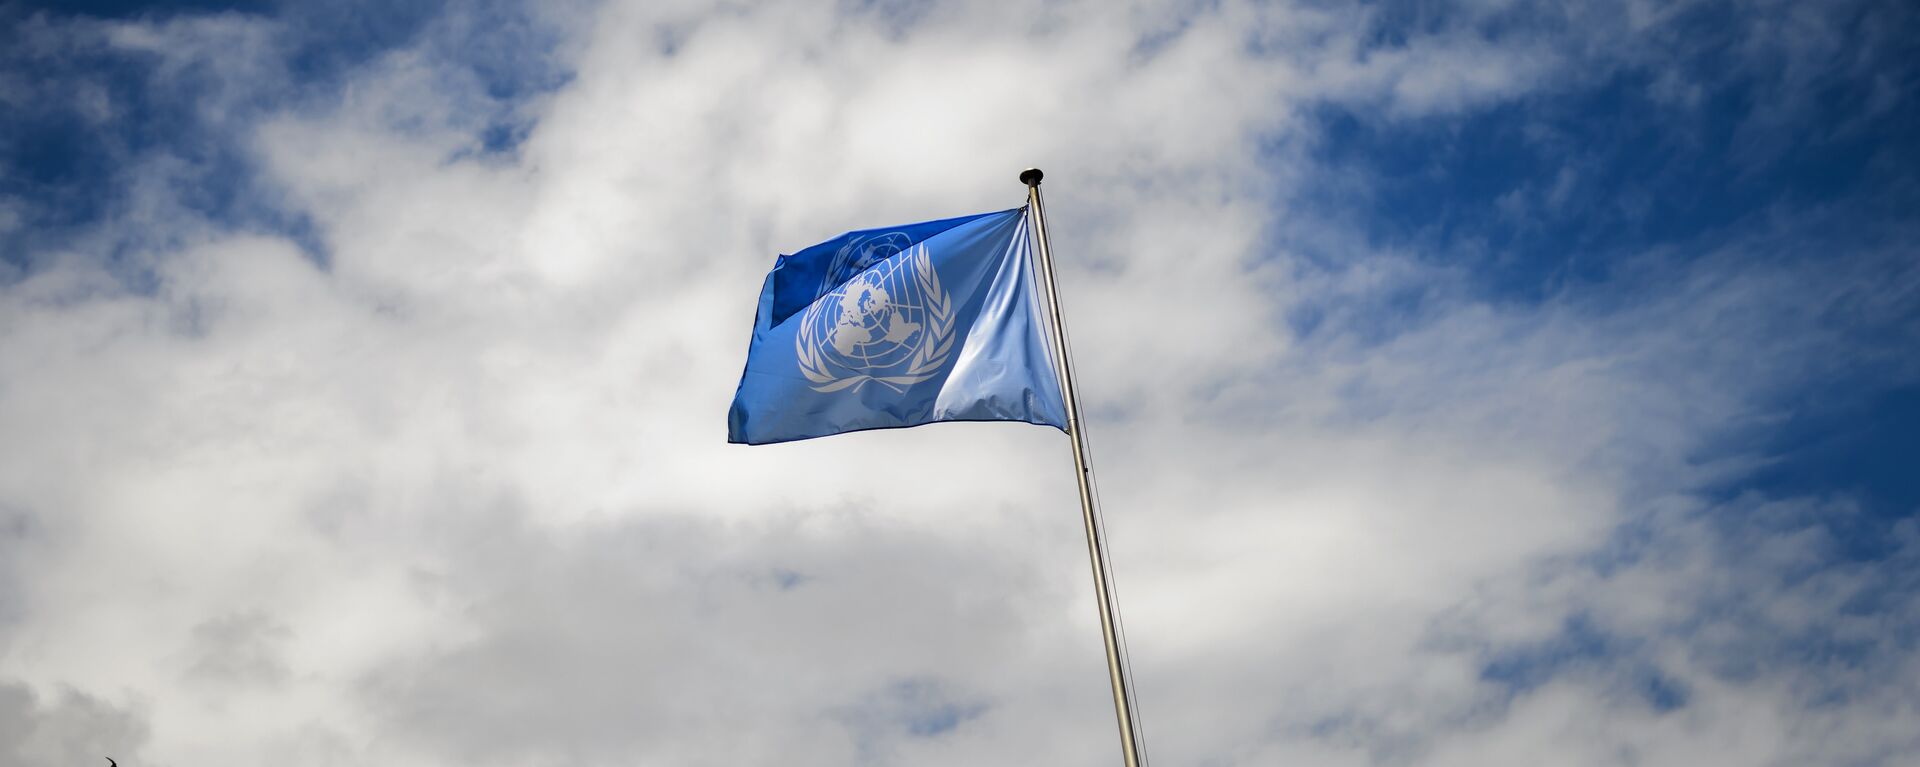 La bandera de la ONU - Sputnik Mundo, 1920, 07.06.2021